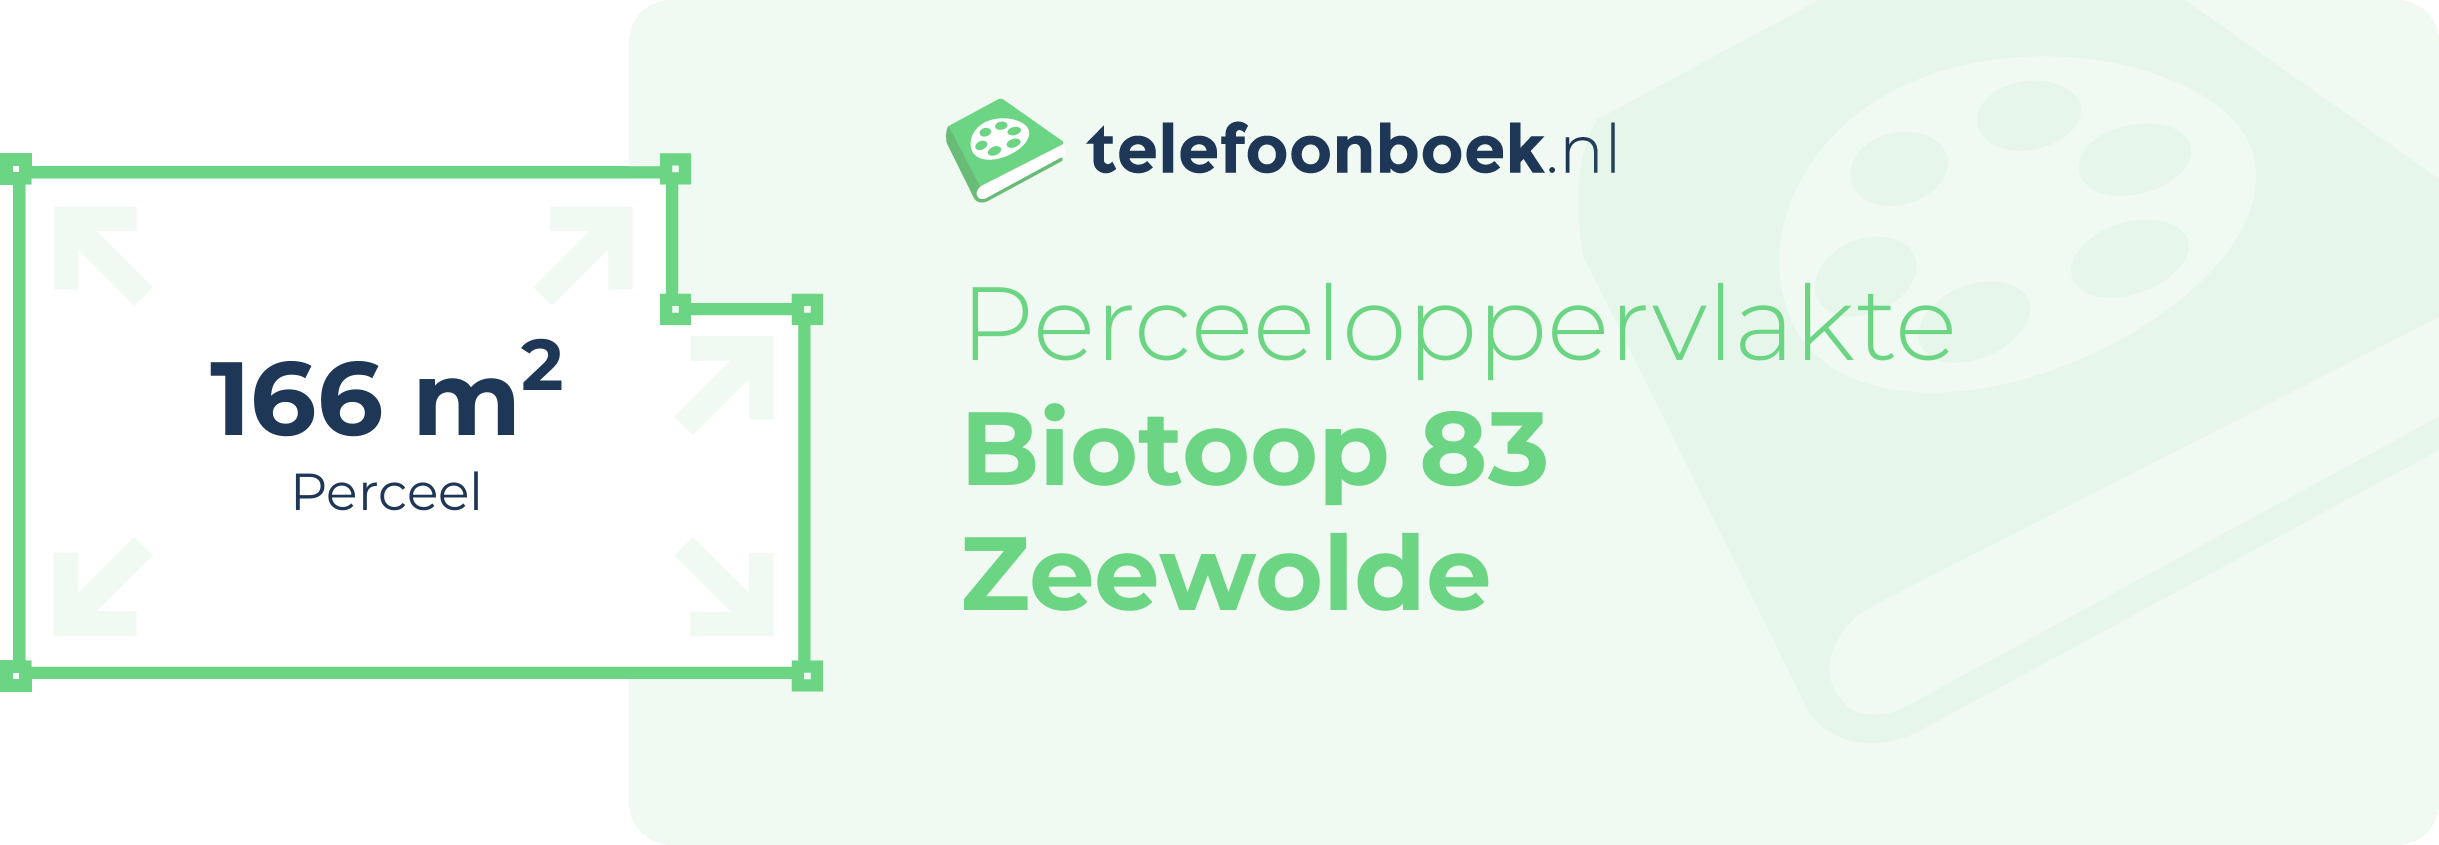 Perceeloppervlakte Biotoop 83 Zeewolde